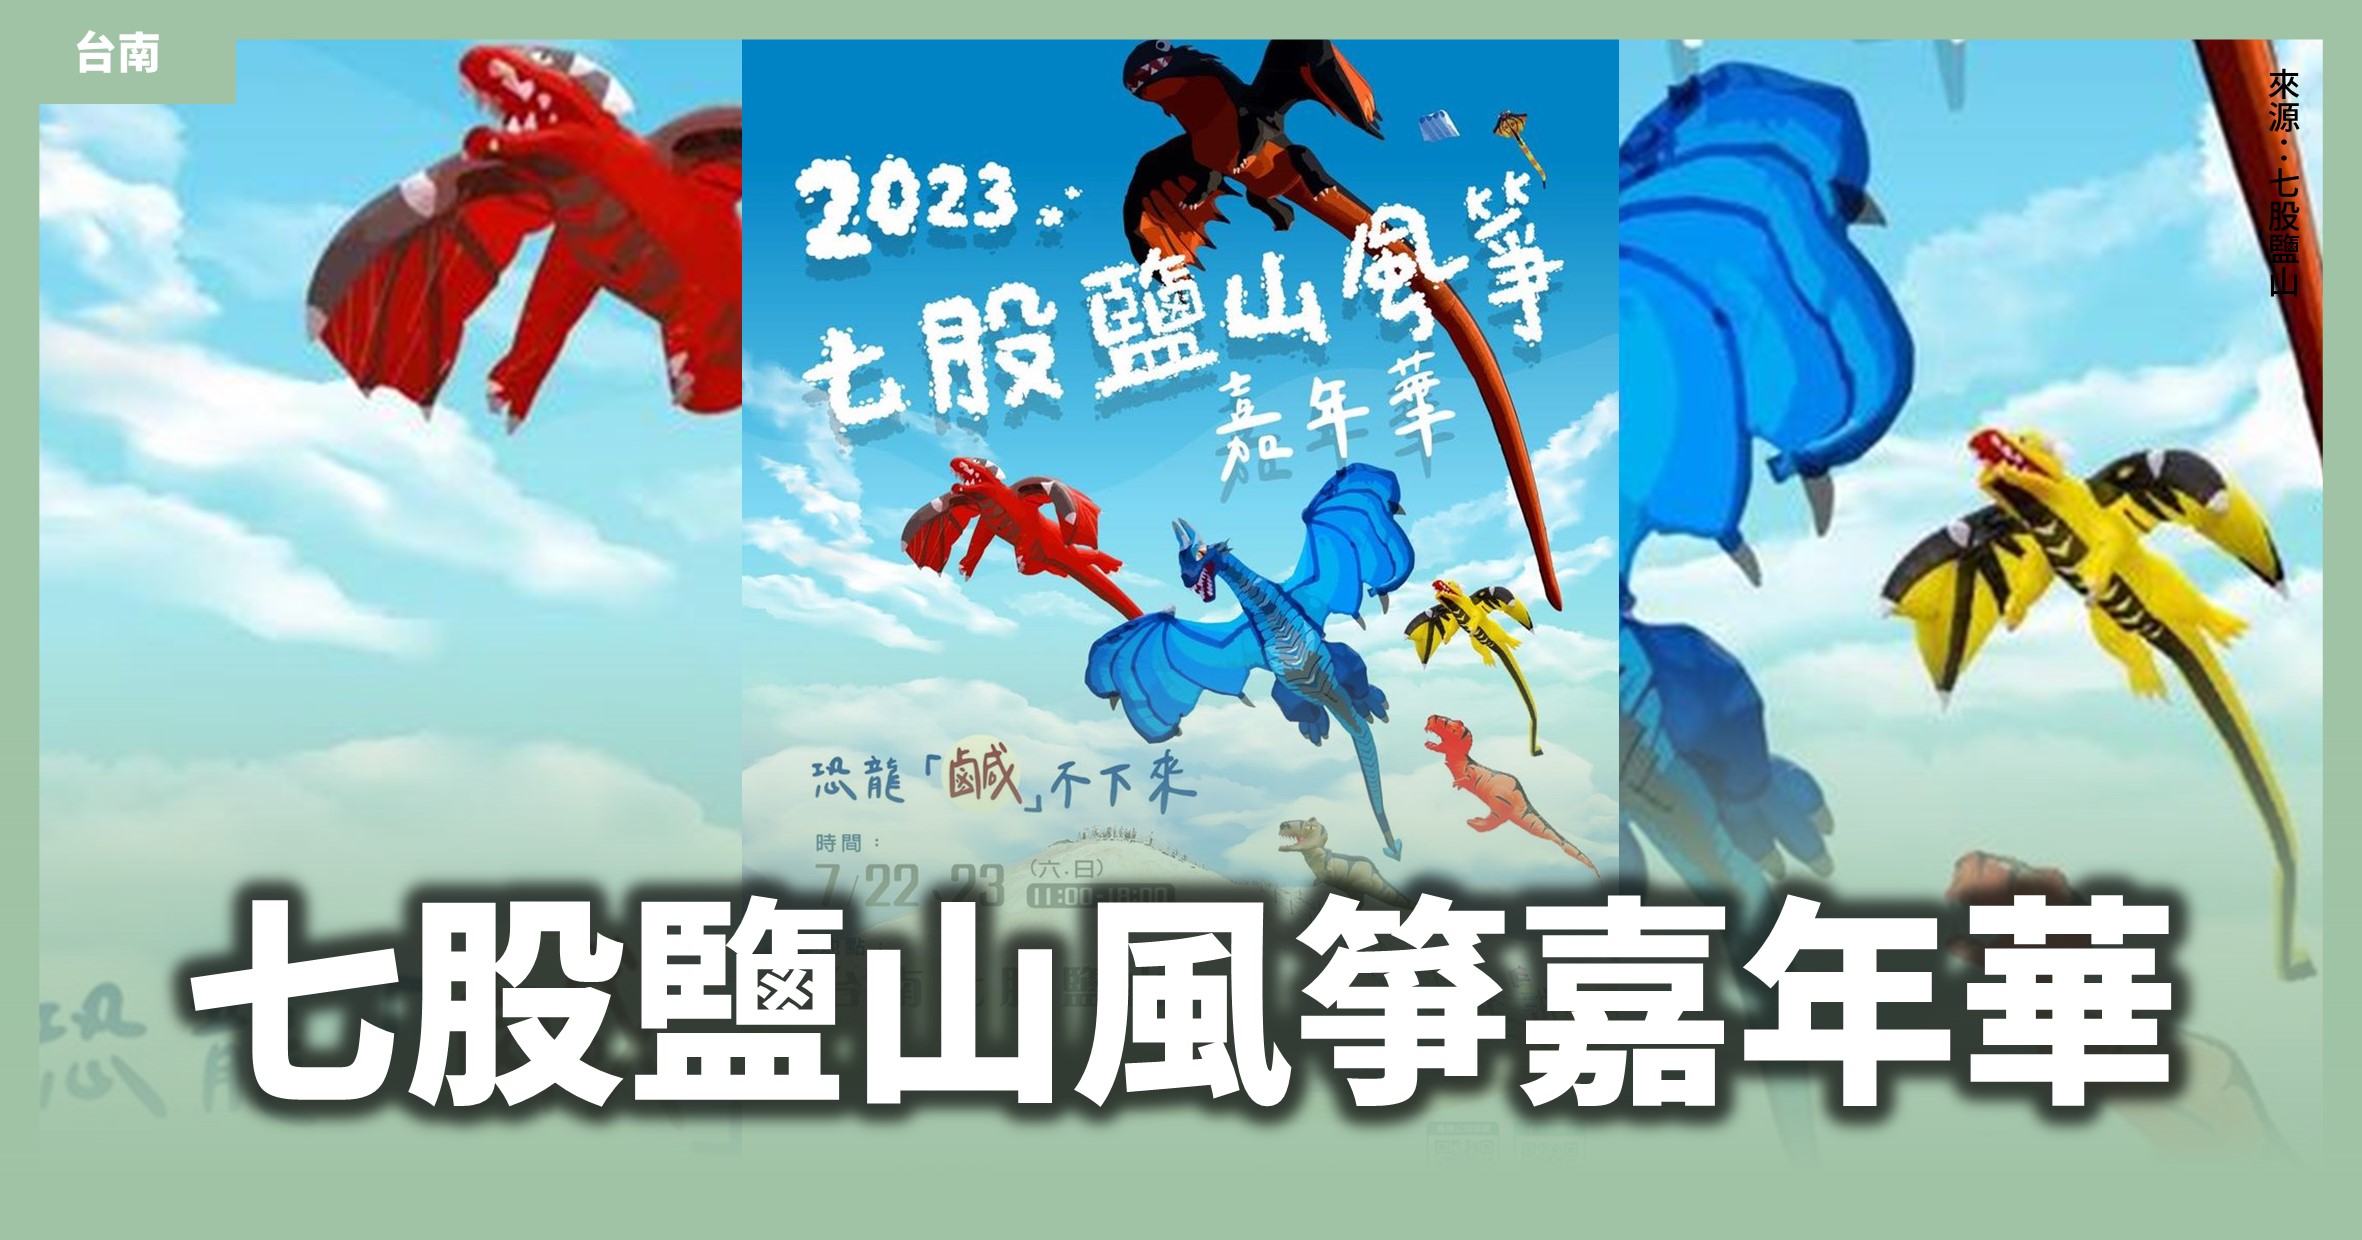 台南「七股鹽山風箏嘉年華」大小朋友一起尖叫！只有2天，超大恐龍風箏起飛啦🦖